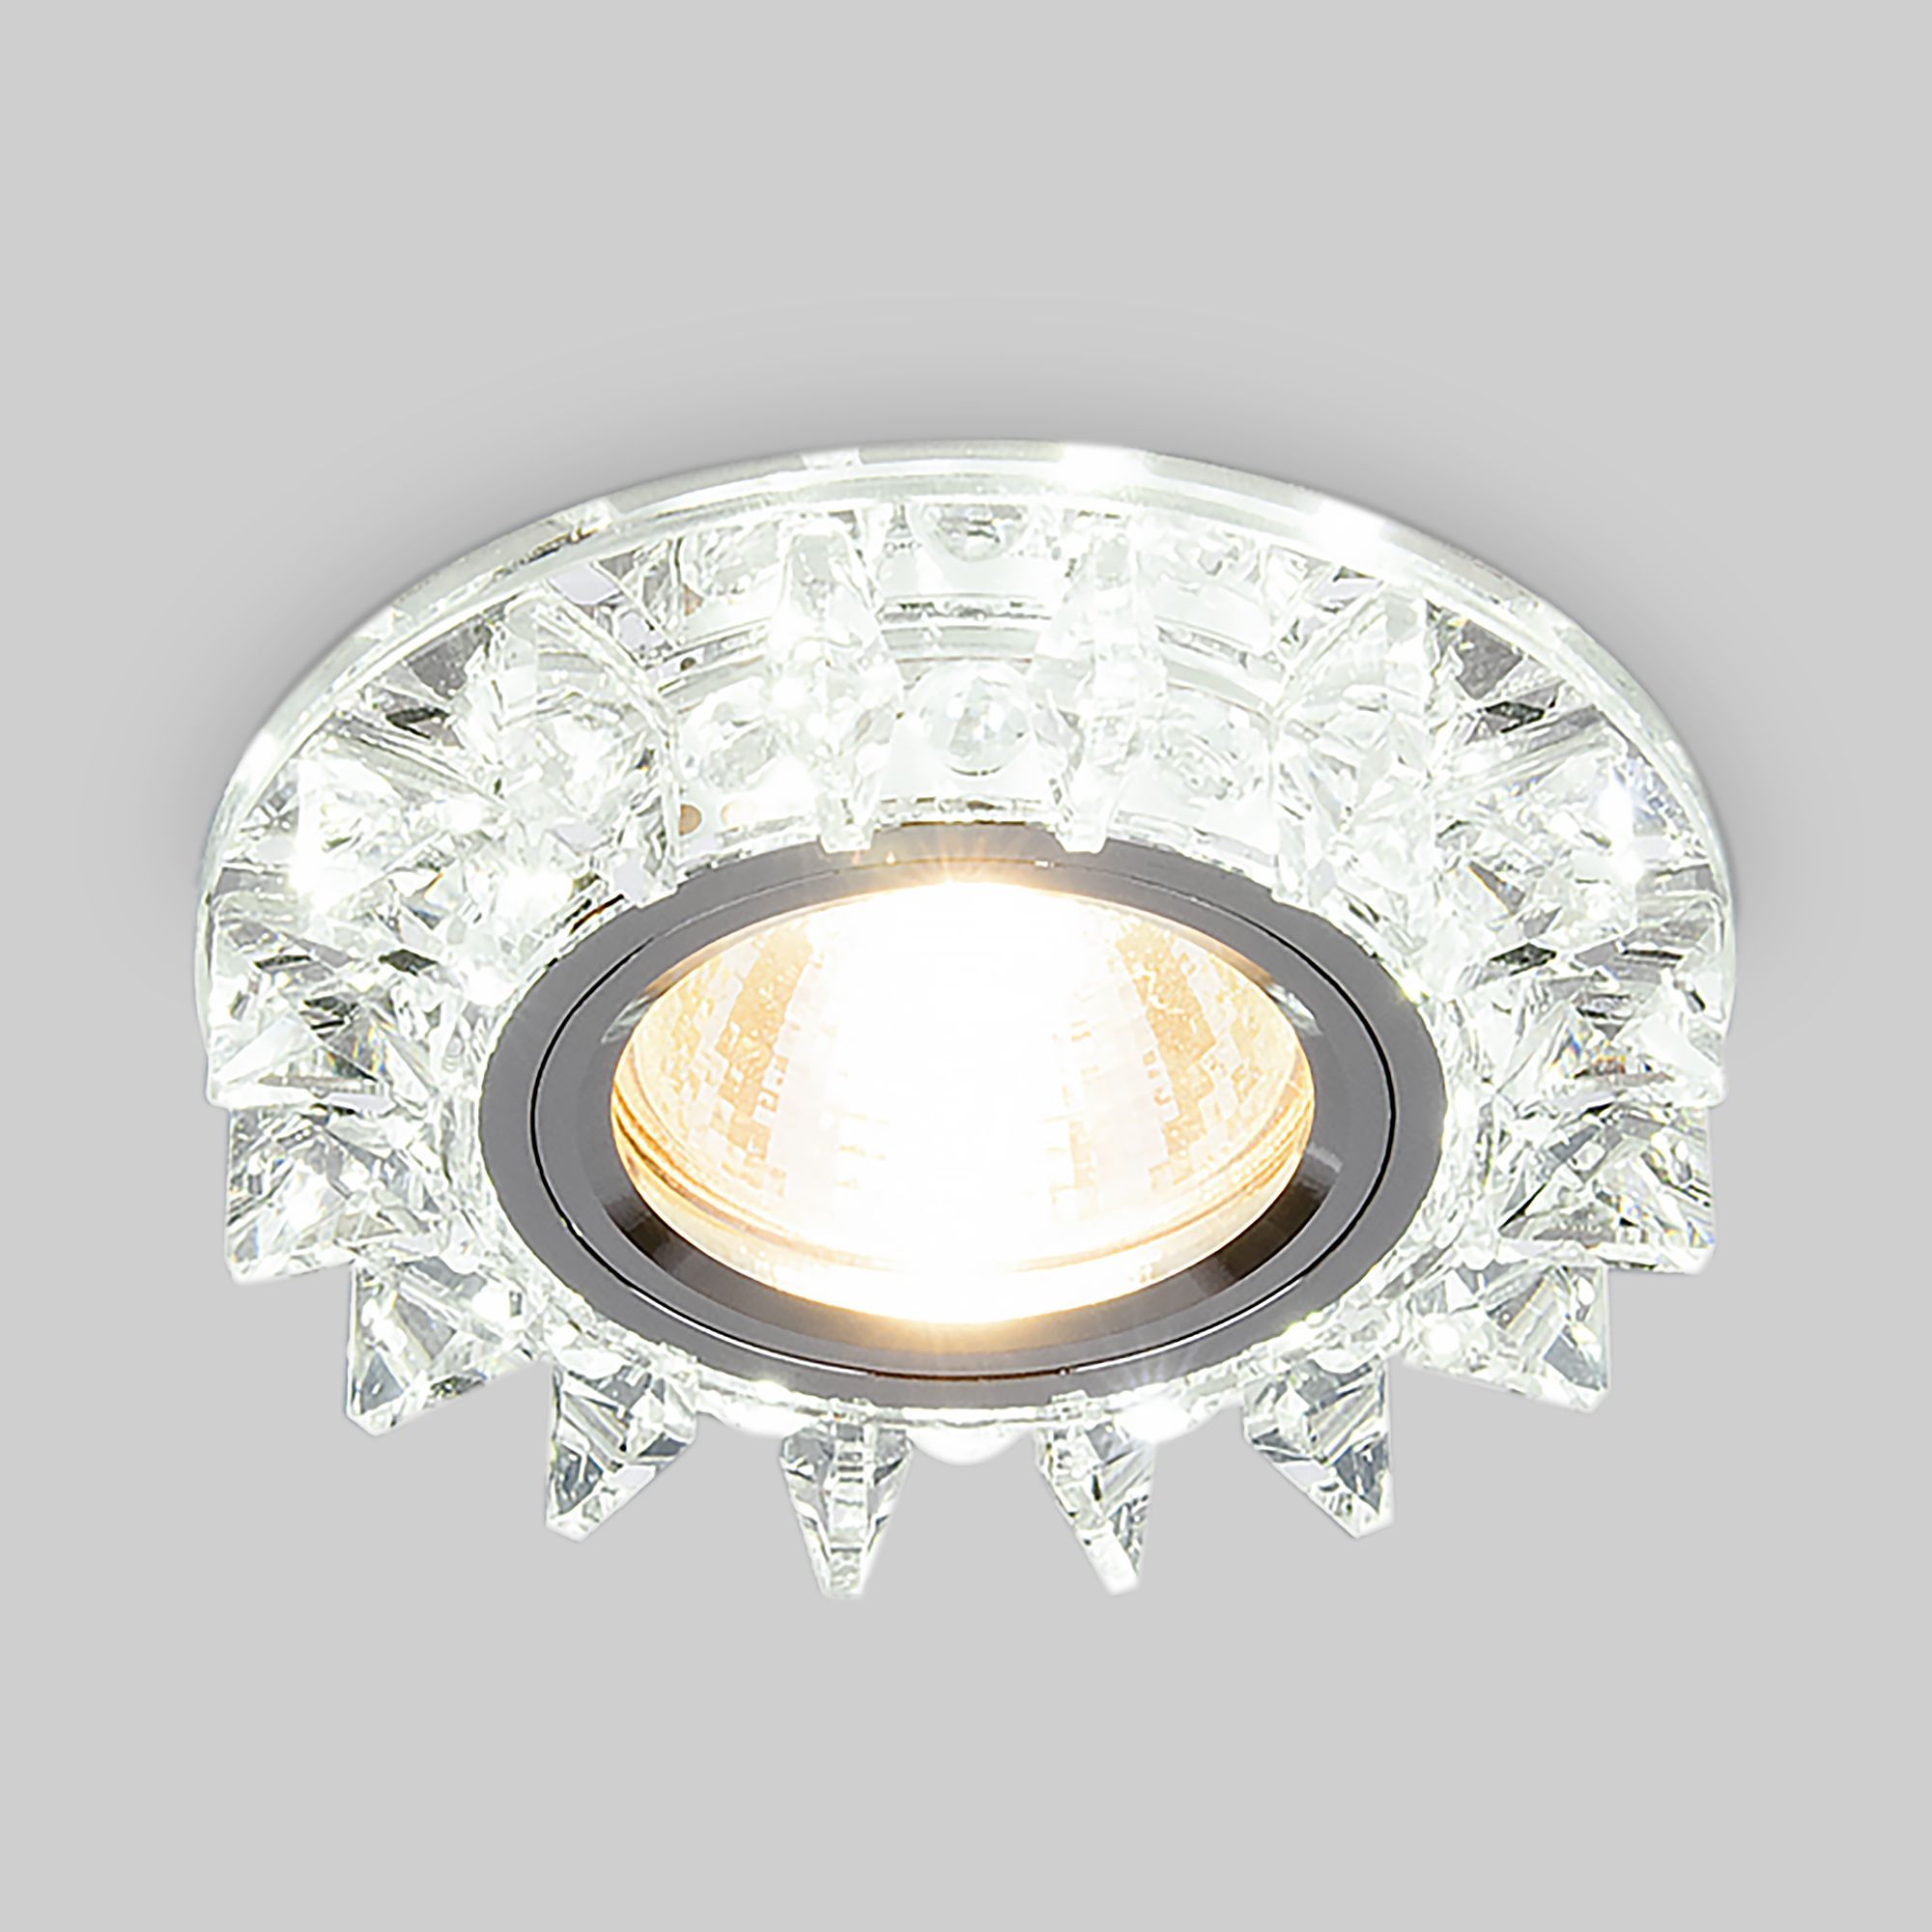 Точечный светильник с LED подсветкой 6037 MR16  SL зеркальный/серебро. Фото 1